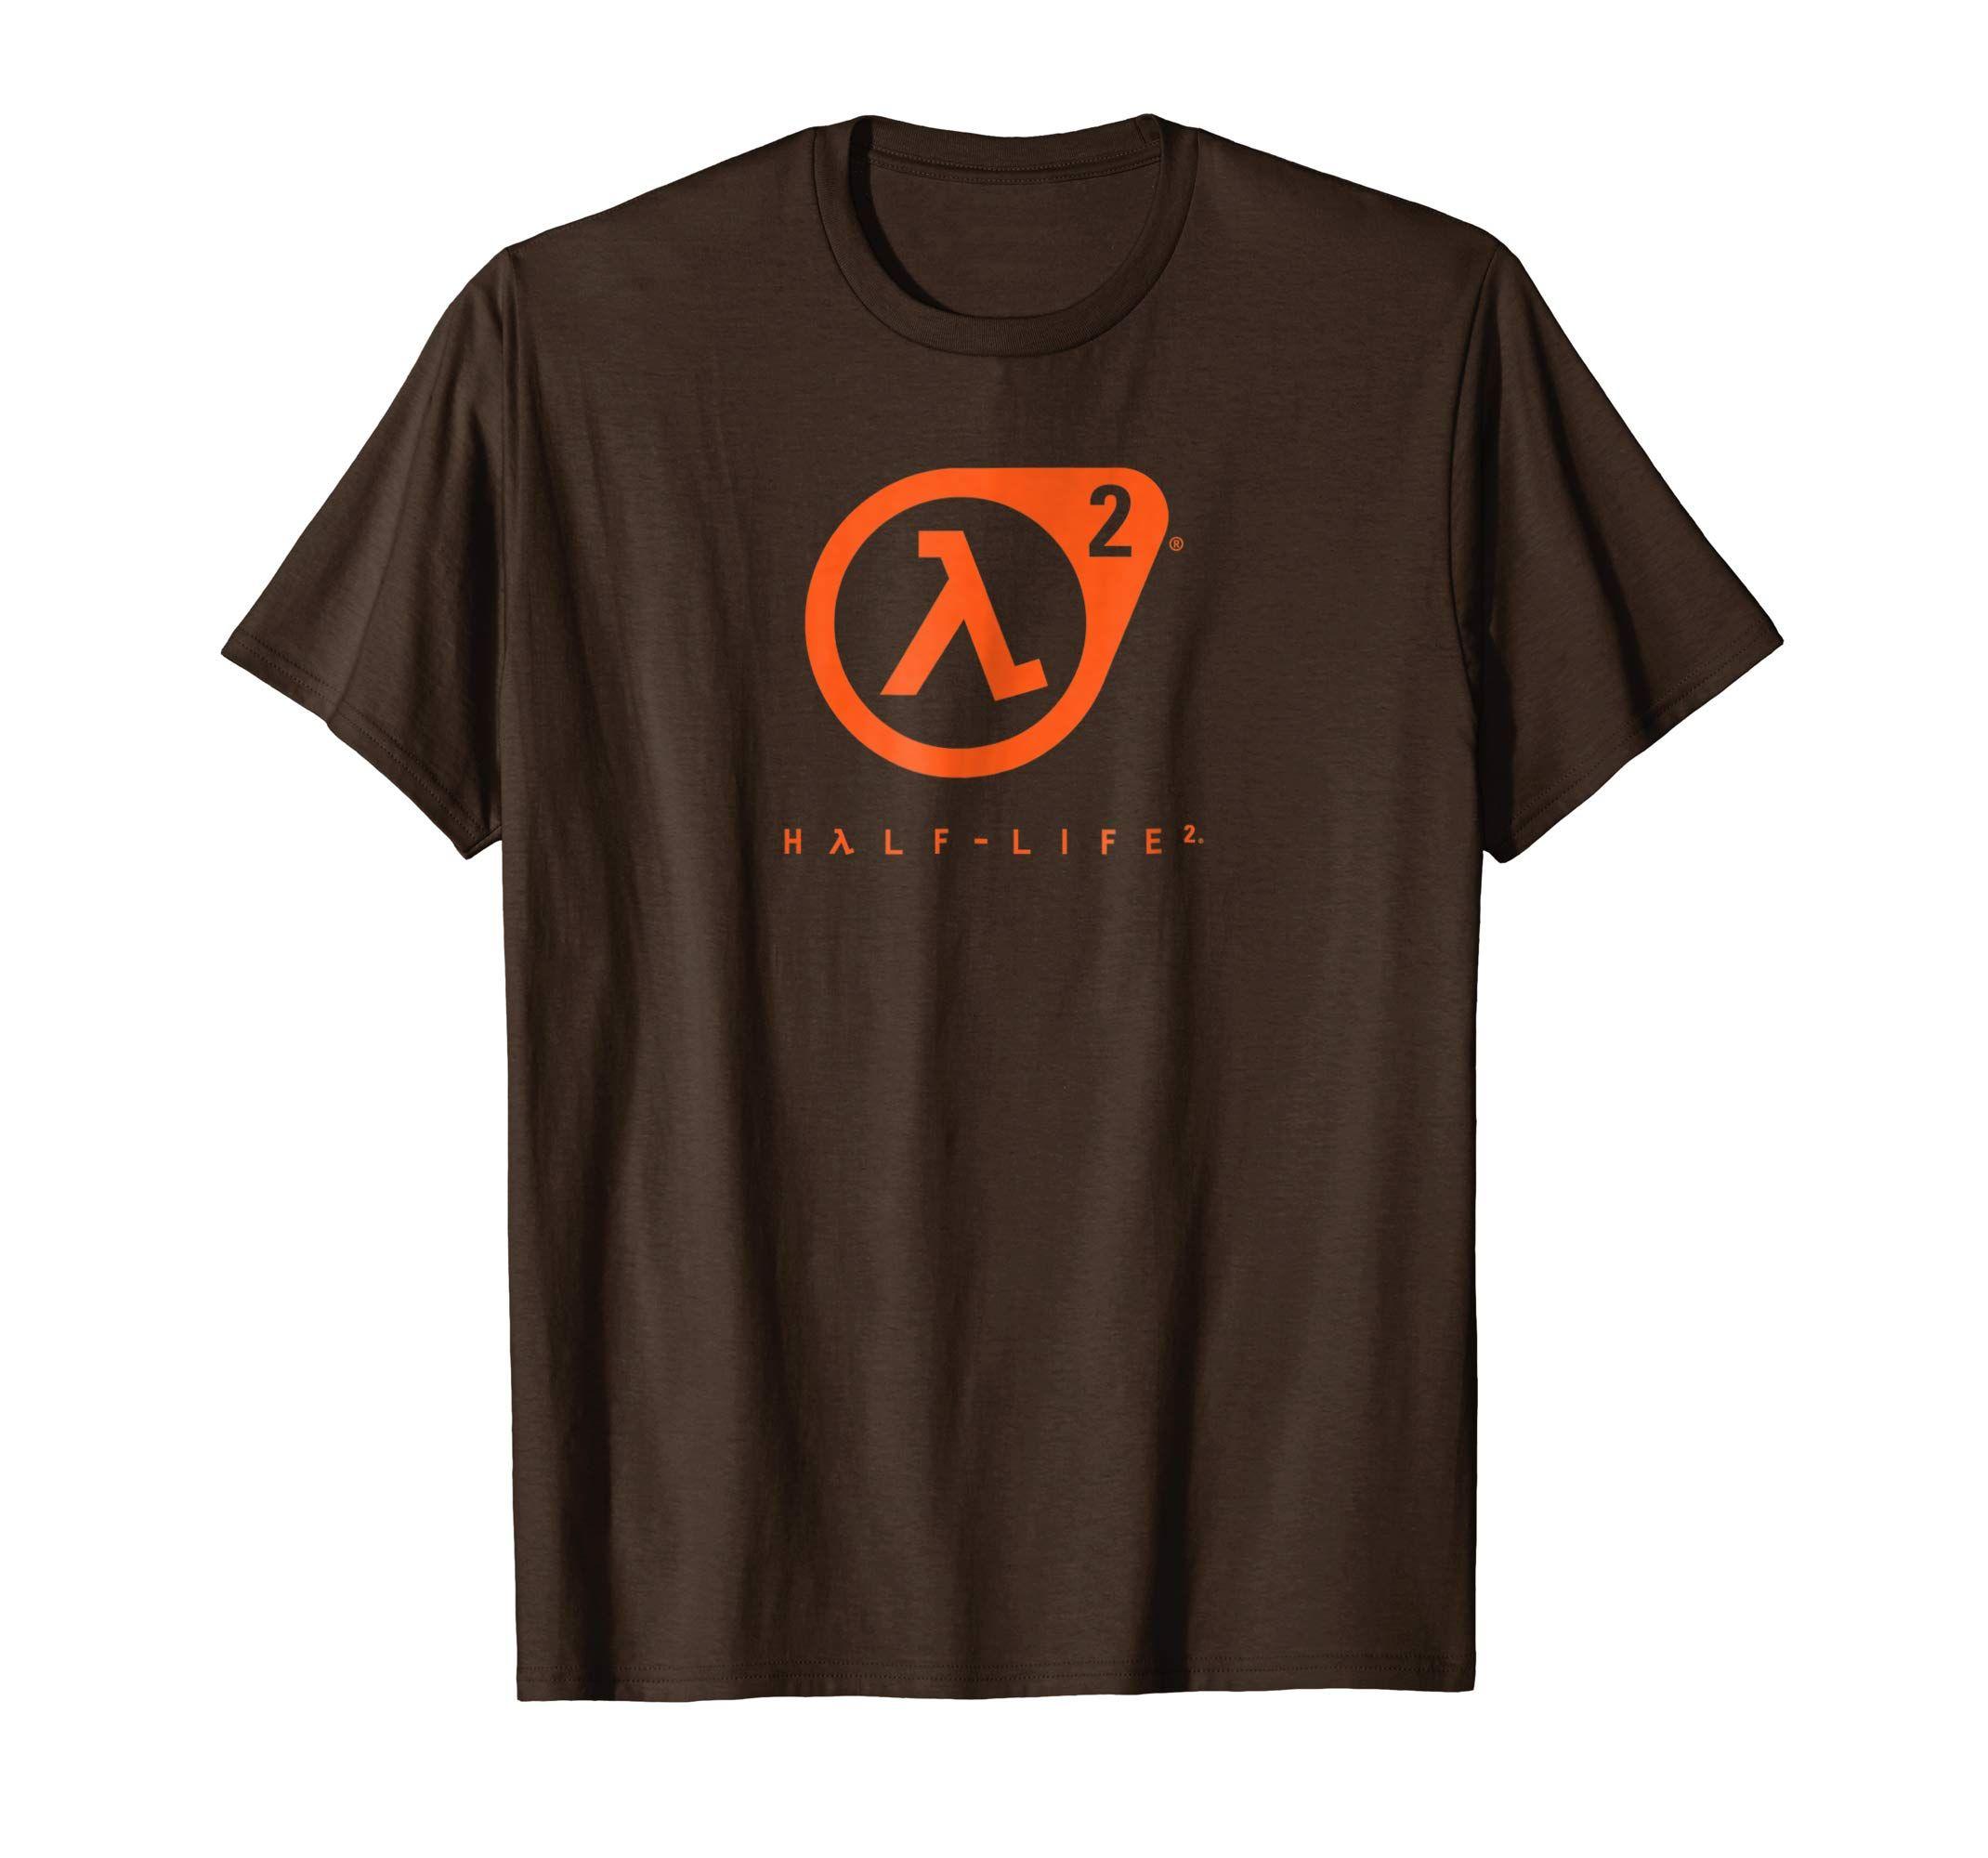 Lambda Logo - Amazon.com: Half Life 2 Lambda Logo t-shirt - HLF006: Clothing